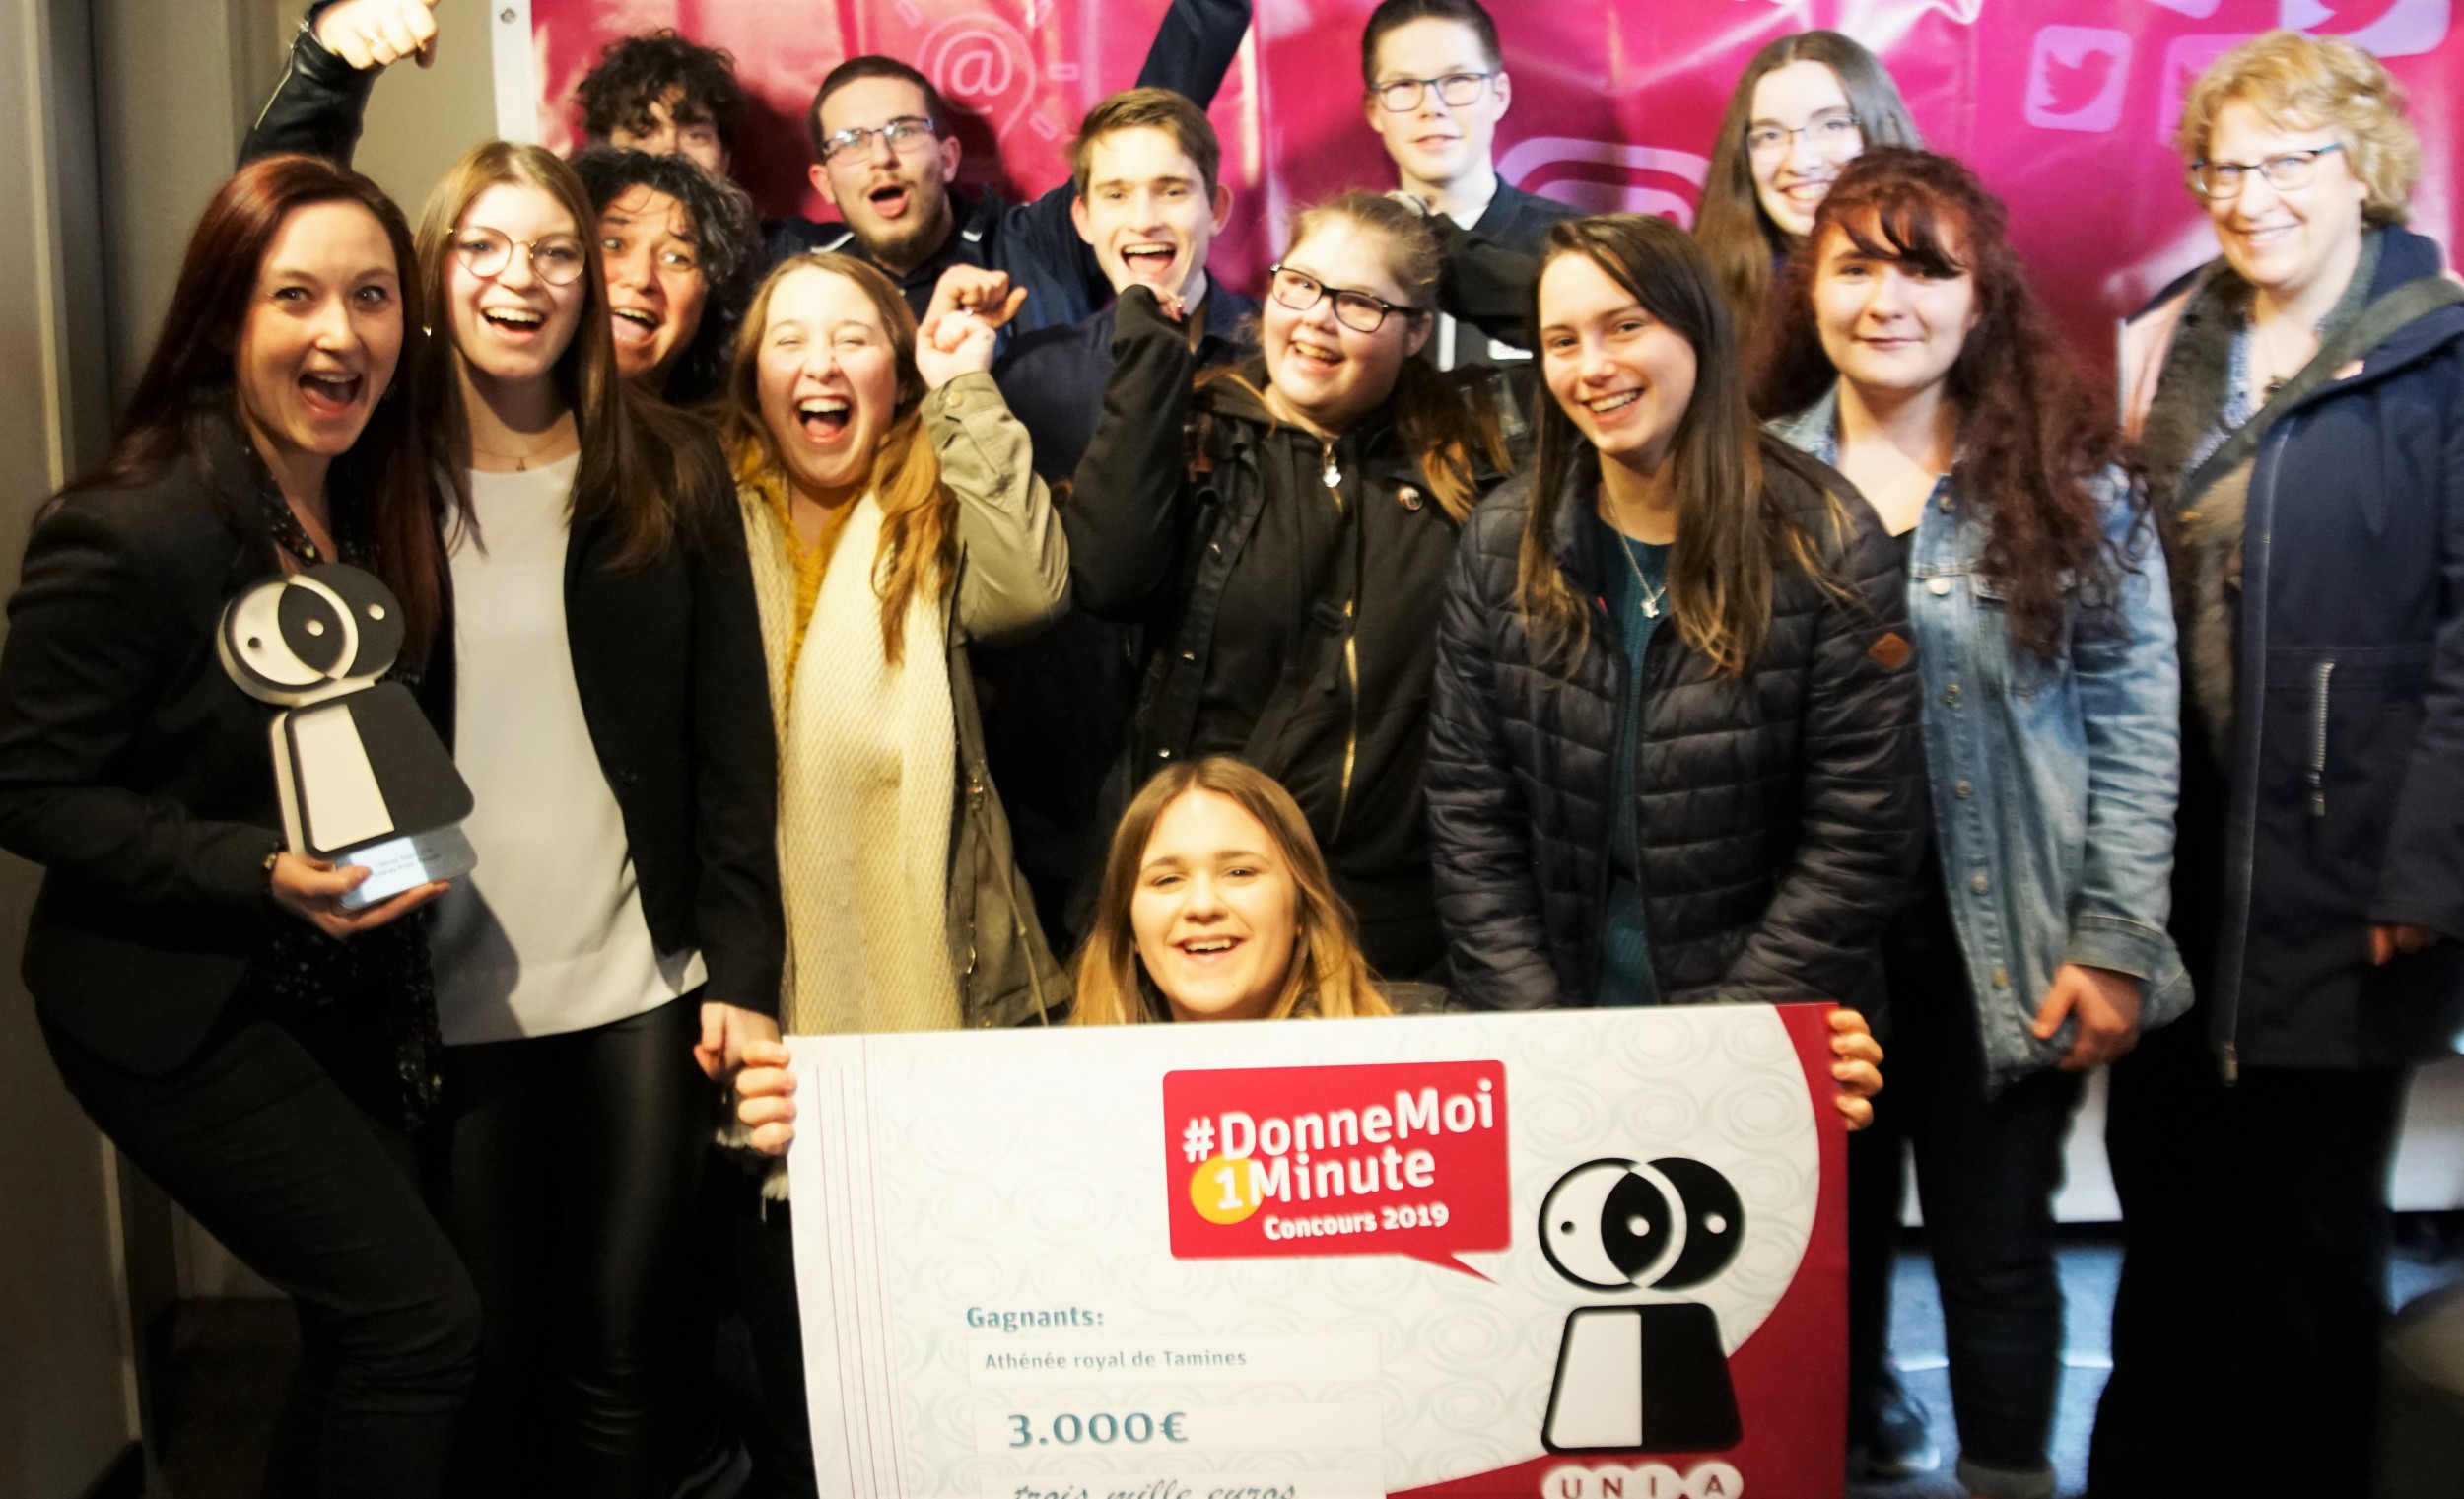 Trois écoles remportent le concours d’Unia #DonneMoi1Minute